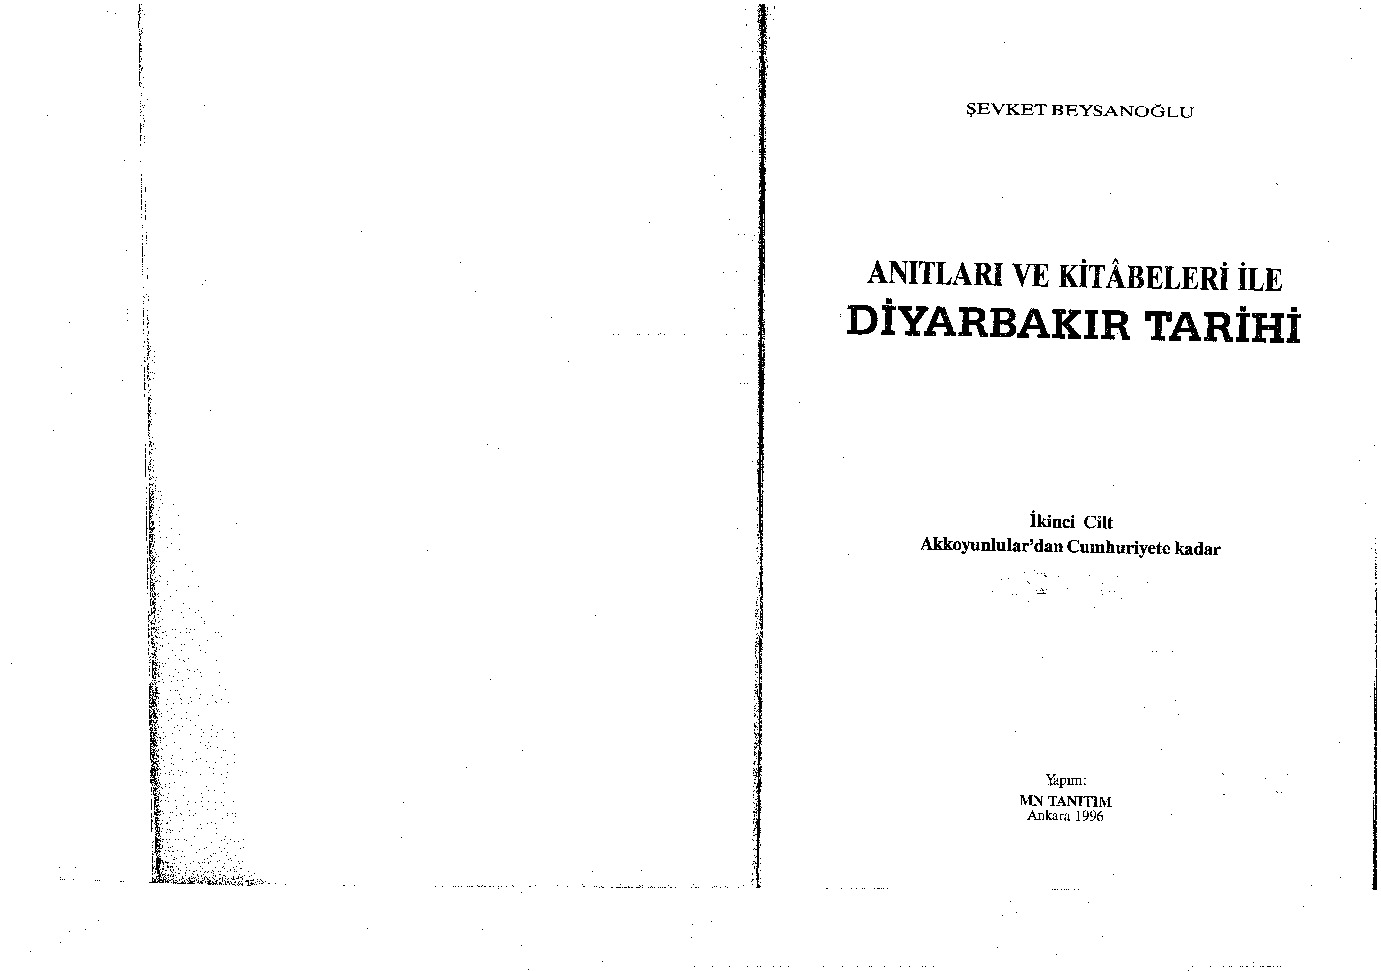 Anıtları Ve Kitabeleri Ile Diyarbekir Tarixi-2-Aghqoyunlulardan Cumhuriyete Qeder-Şevket Beysanoğlu-1966-468s